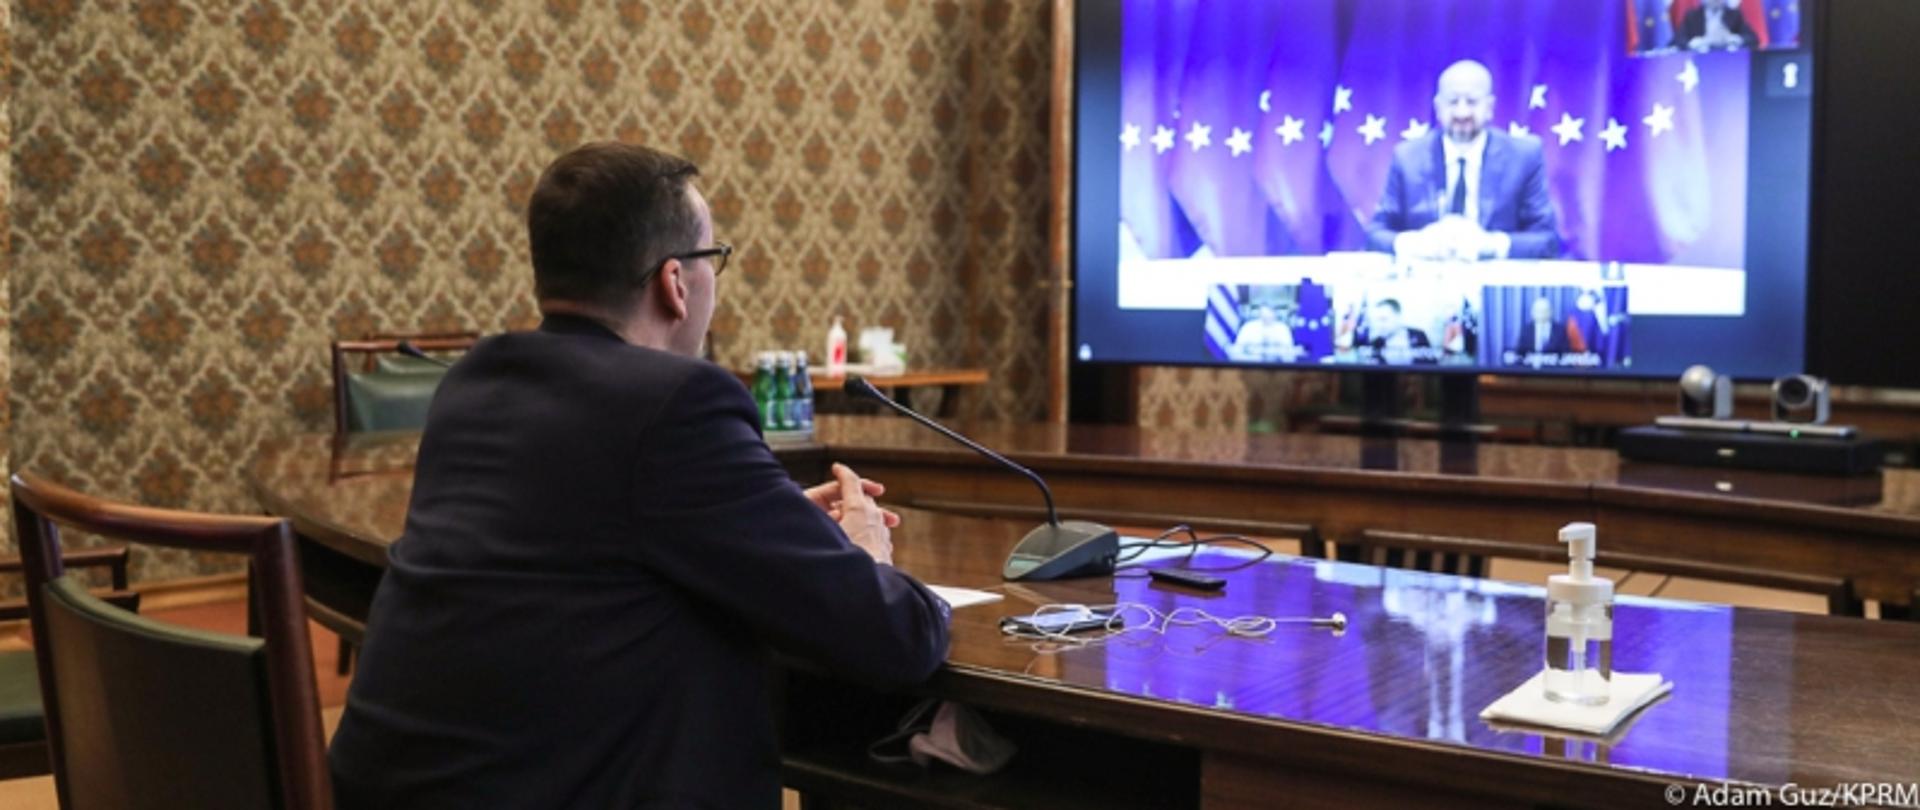 Posiedzenie Rady Europejskiej. Premier Mateusz Morawiecki siedzi za stołem konferencyjnym. Przed nim na ekranie przewodniczący Rady Europejskiej Charles Michel 